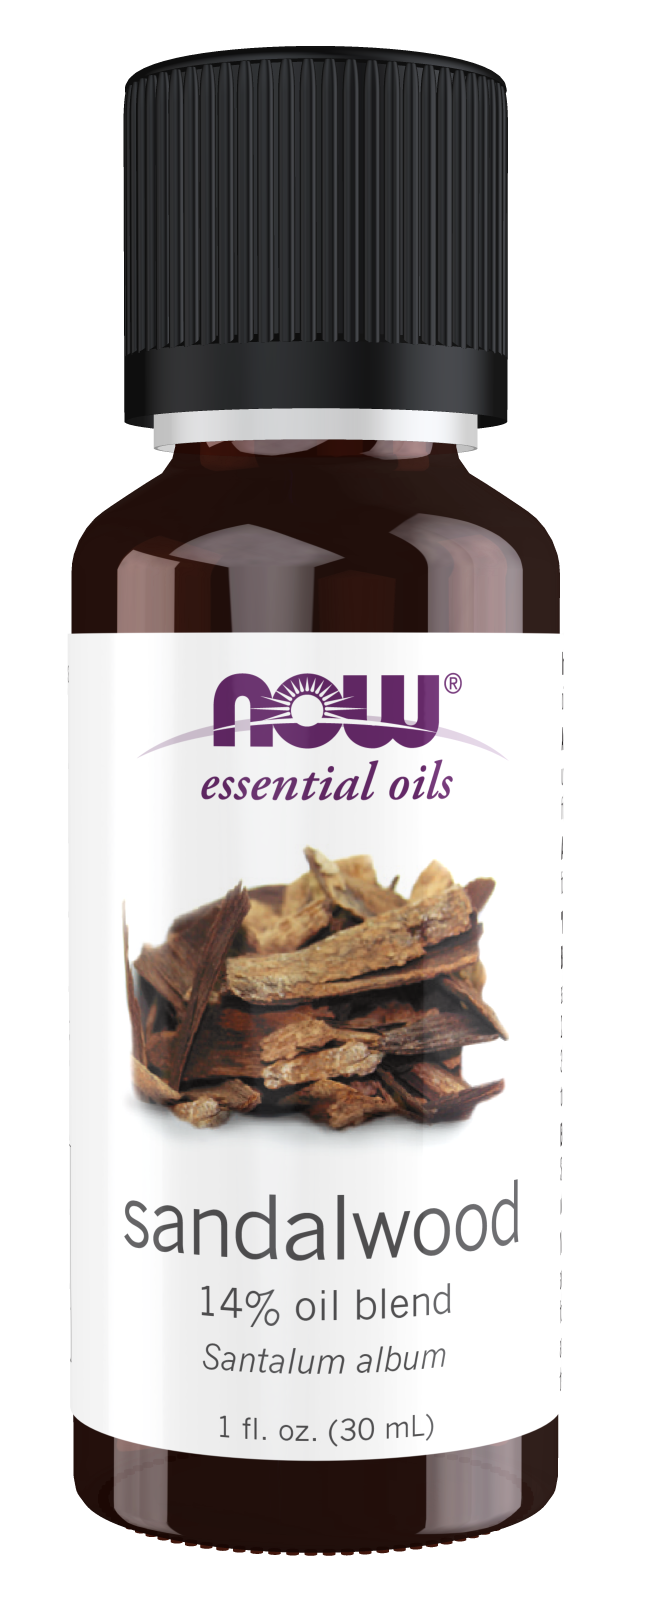 Sandalwood Oil Blends, Shop Essential Oils